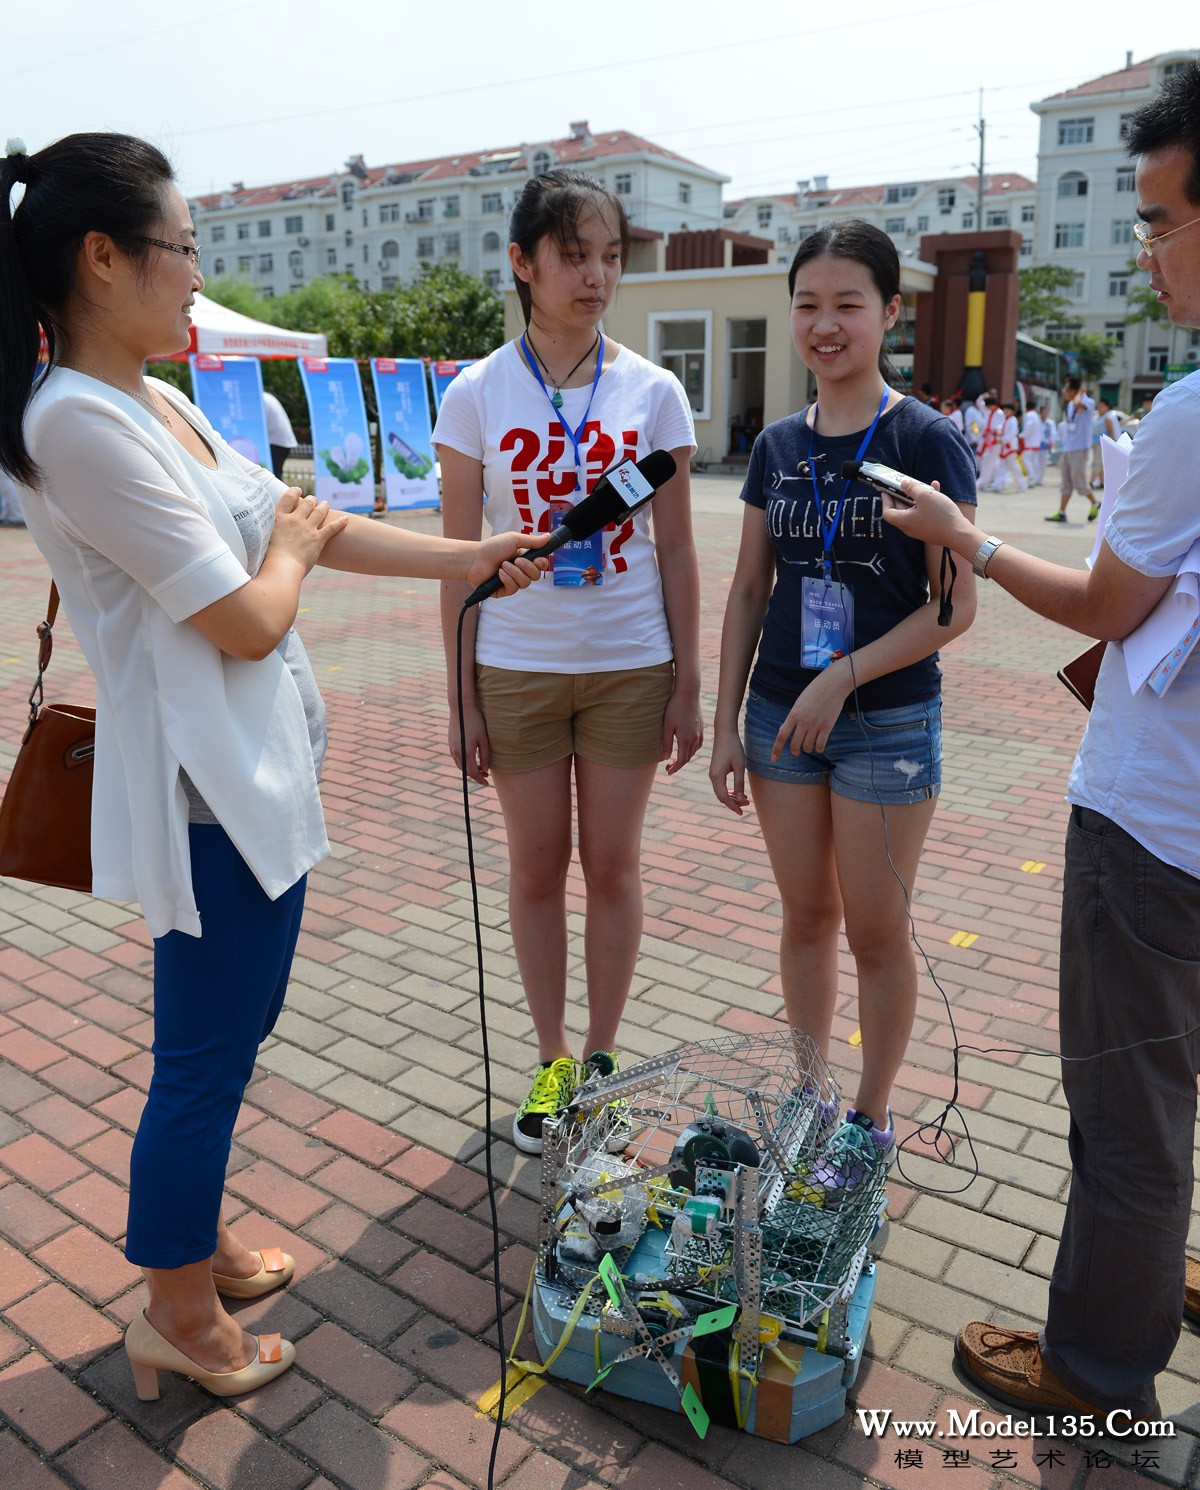 参加环保收集船竞赛的深圳队选手